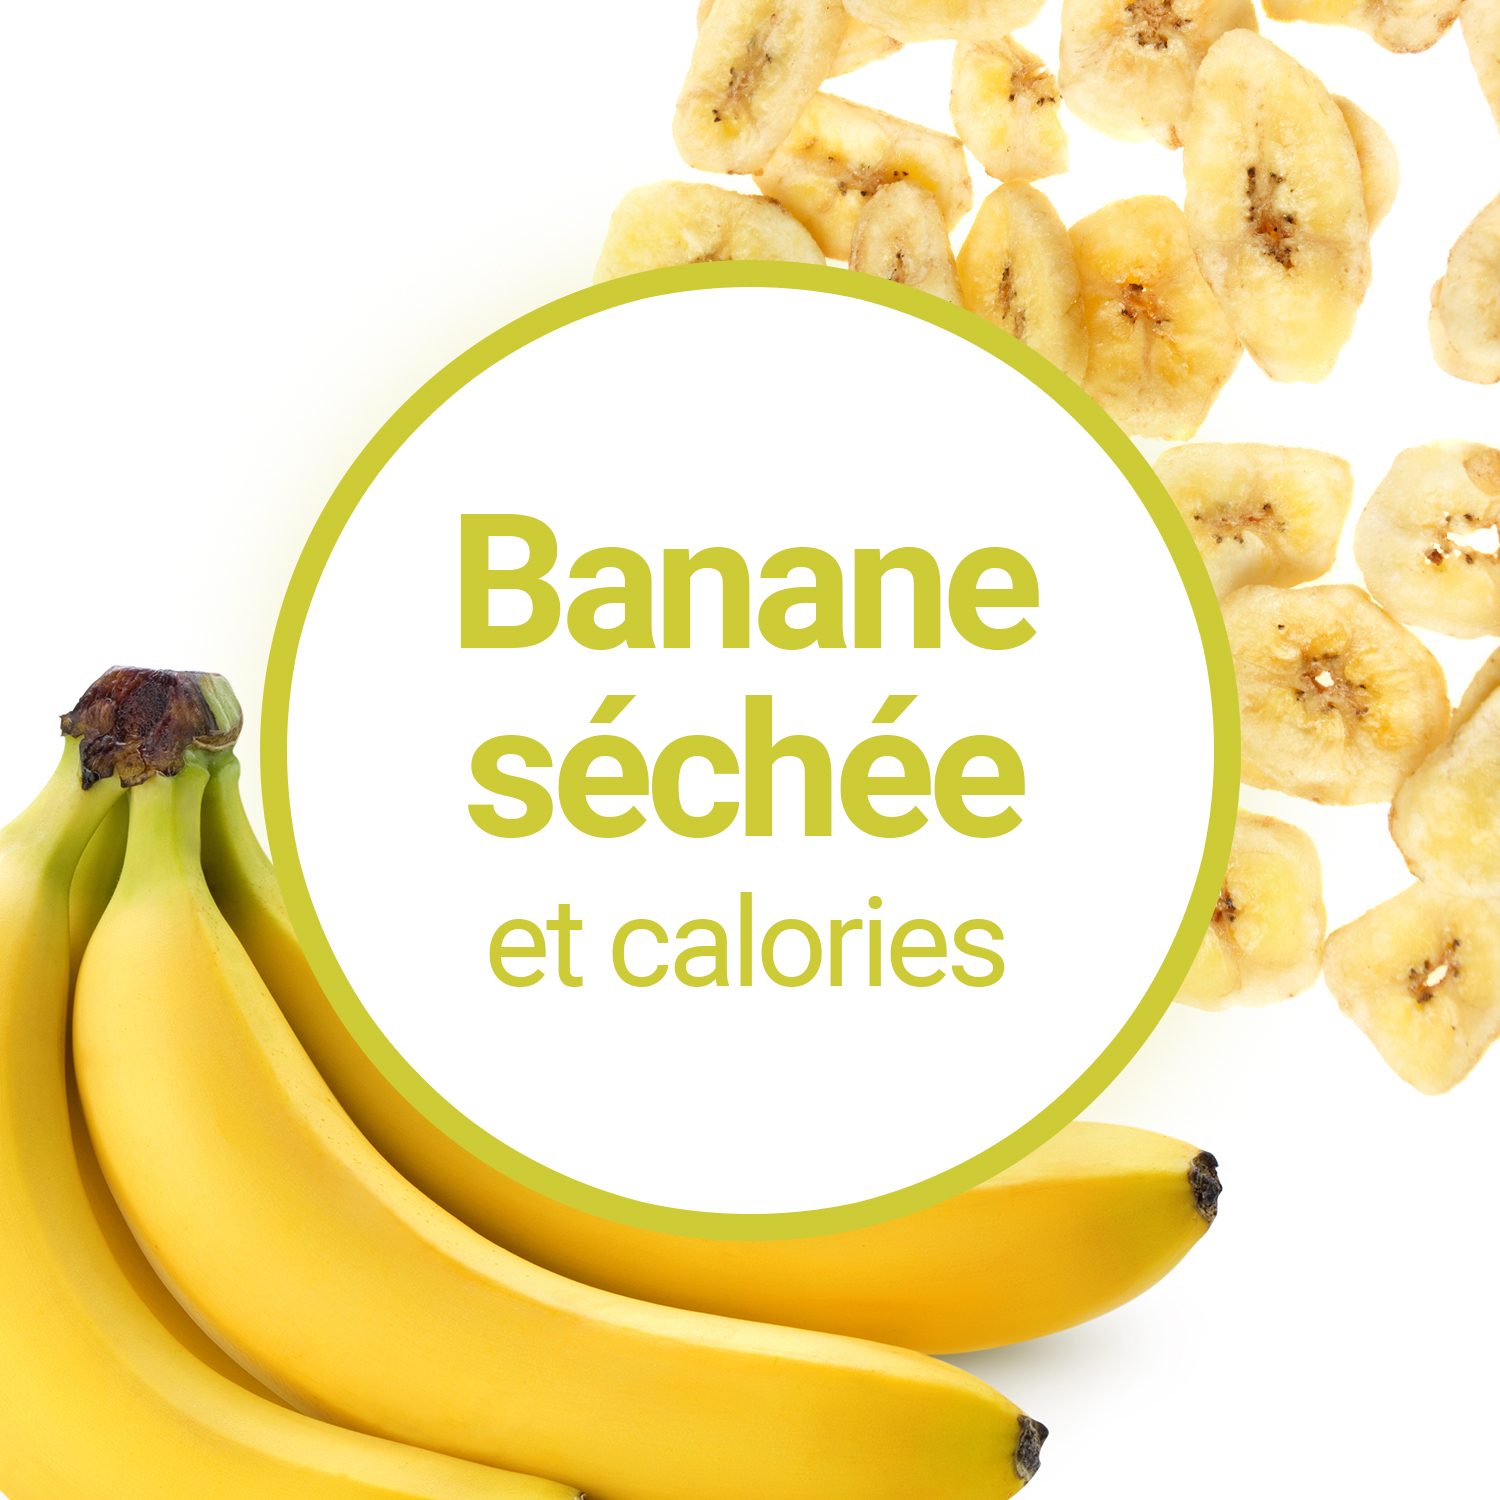 Les Chips de Bananes Séchées sont-elles riches en calories ?